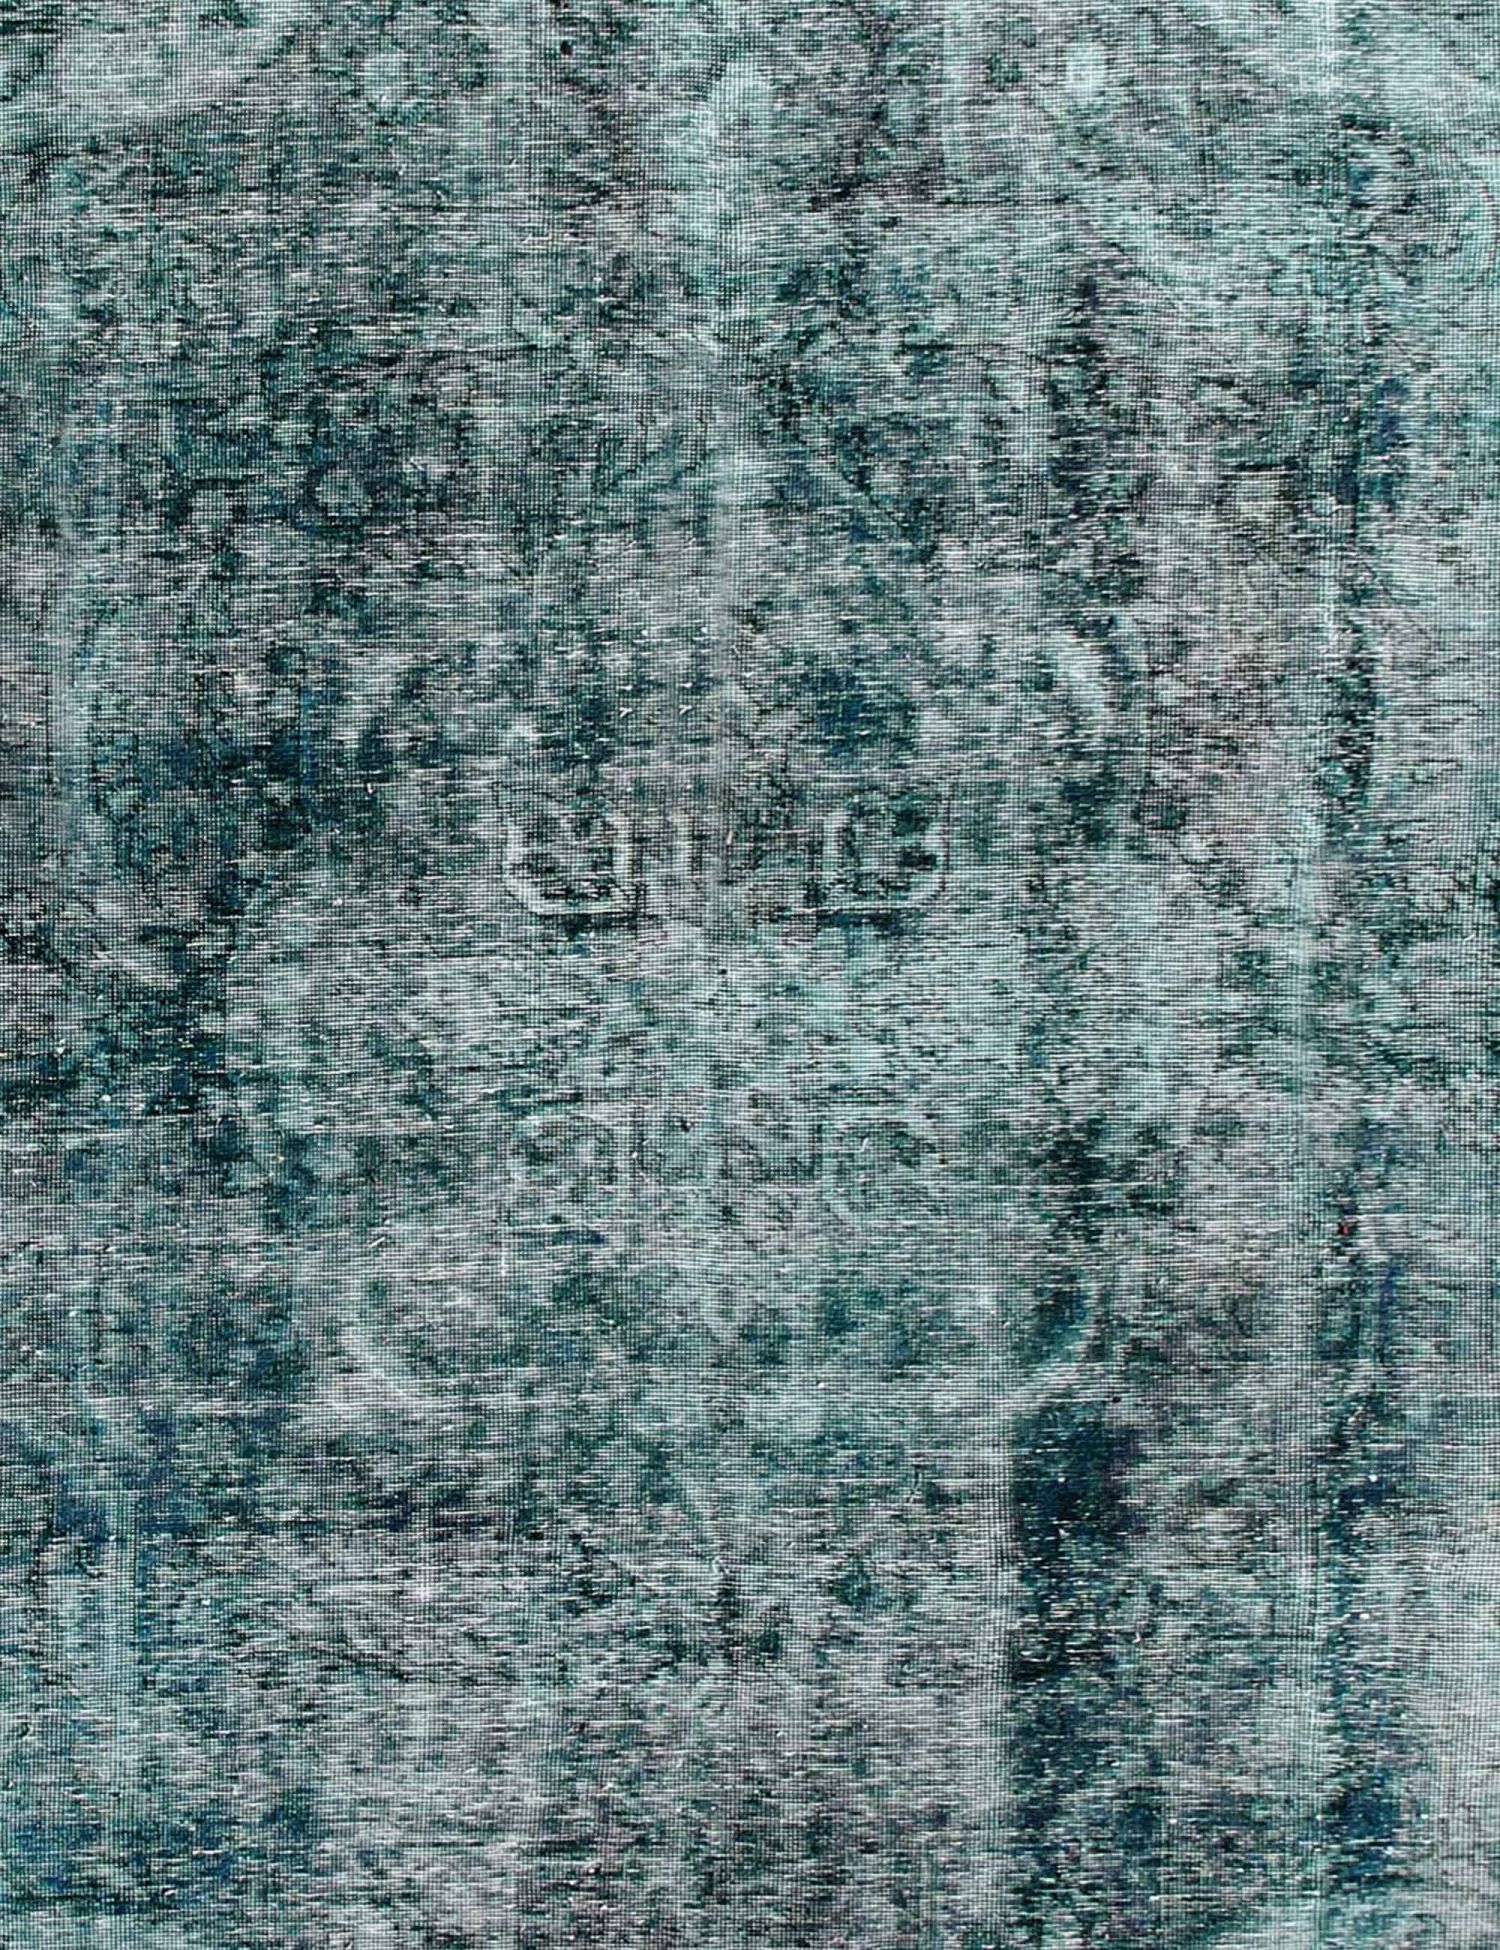 Persischer Vintage Teppich  grün <br/>335 x 243 cm